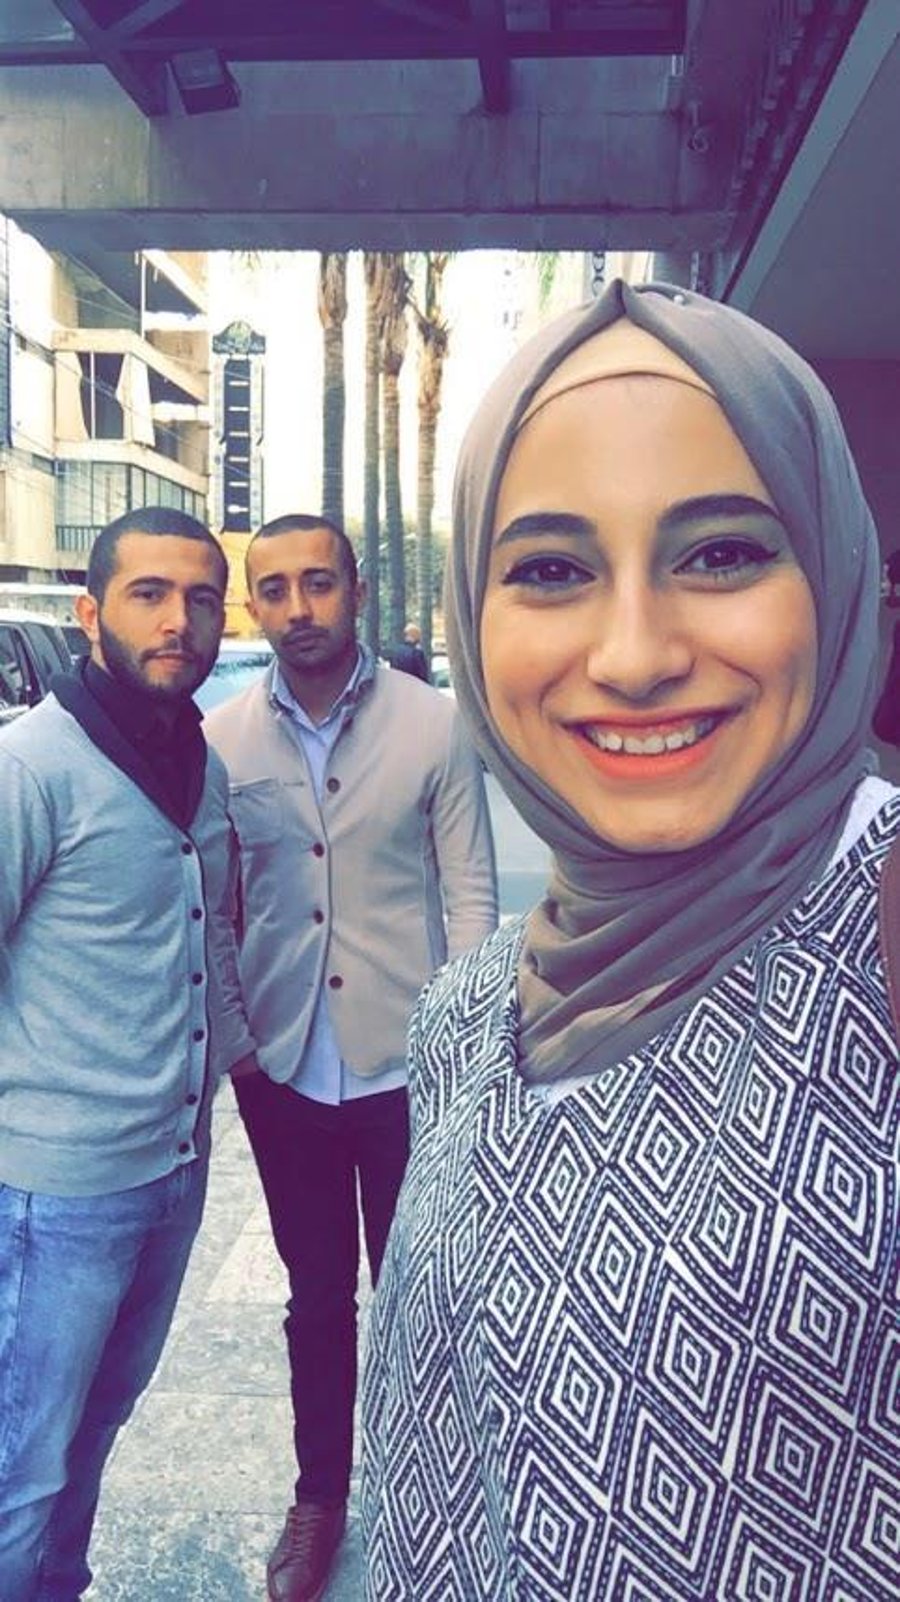 יאסמין ג׳אבר מצולמת יחד עם עטיא אבו סמהדנא ומחמד מוסא, פעילי יחידת הפיגועים המשותפת של חיזבאללה וכוח קודס